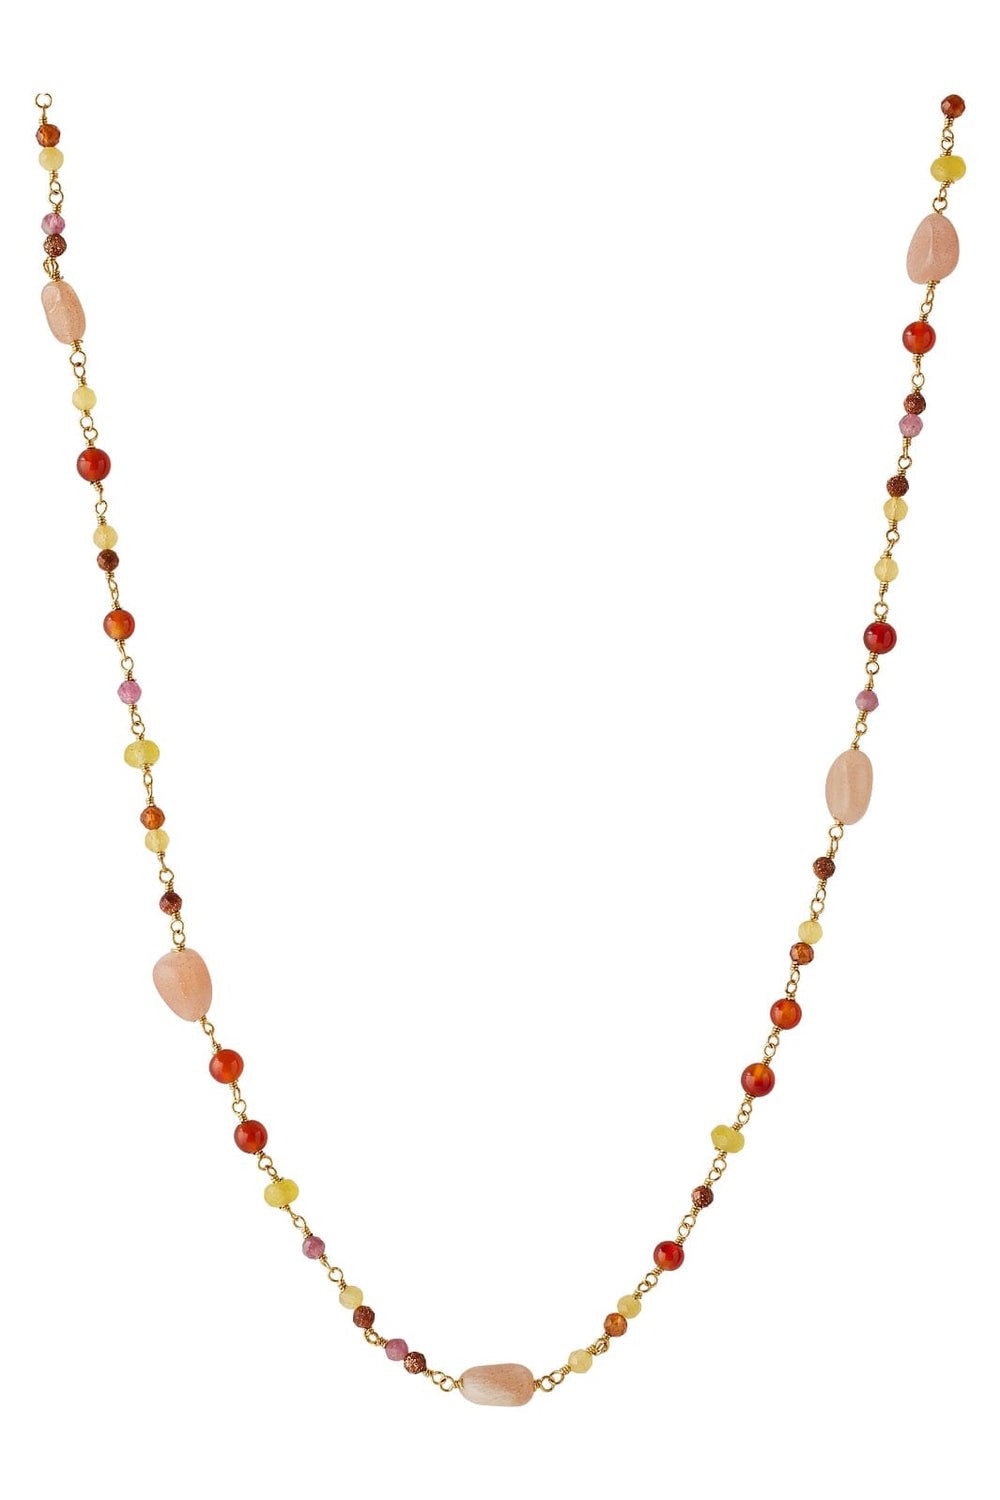 Pernille Corydon Jewellery - Golden Fields Necklace - Goldplated Halskæder 